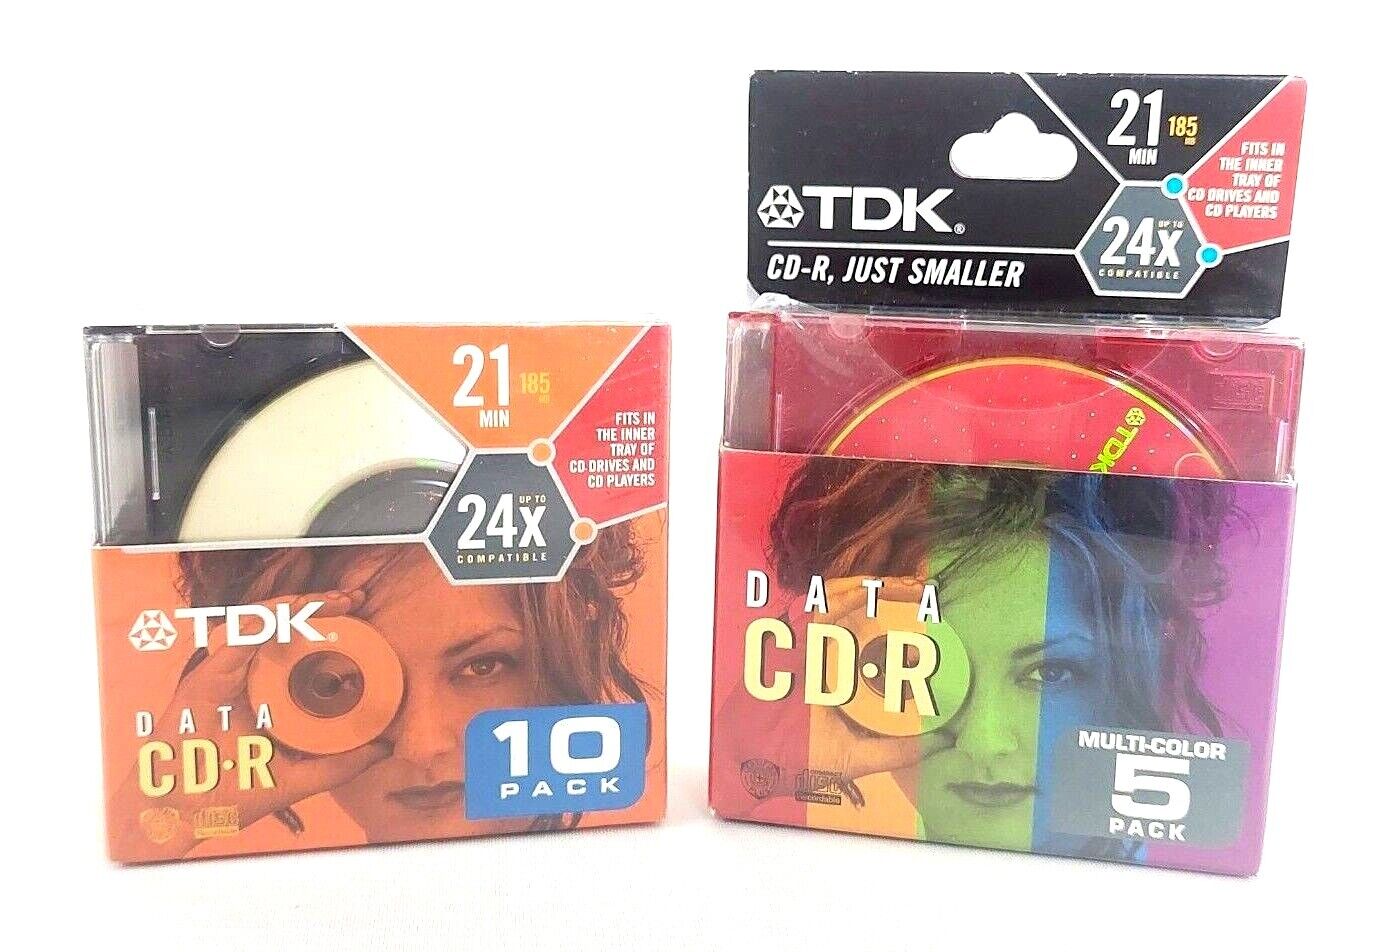 New TDK Data CD-R Disc 10 Pack + TDK Multi-Color 5 Pack 21 Min (15 CD-R Lot) 